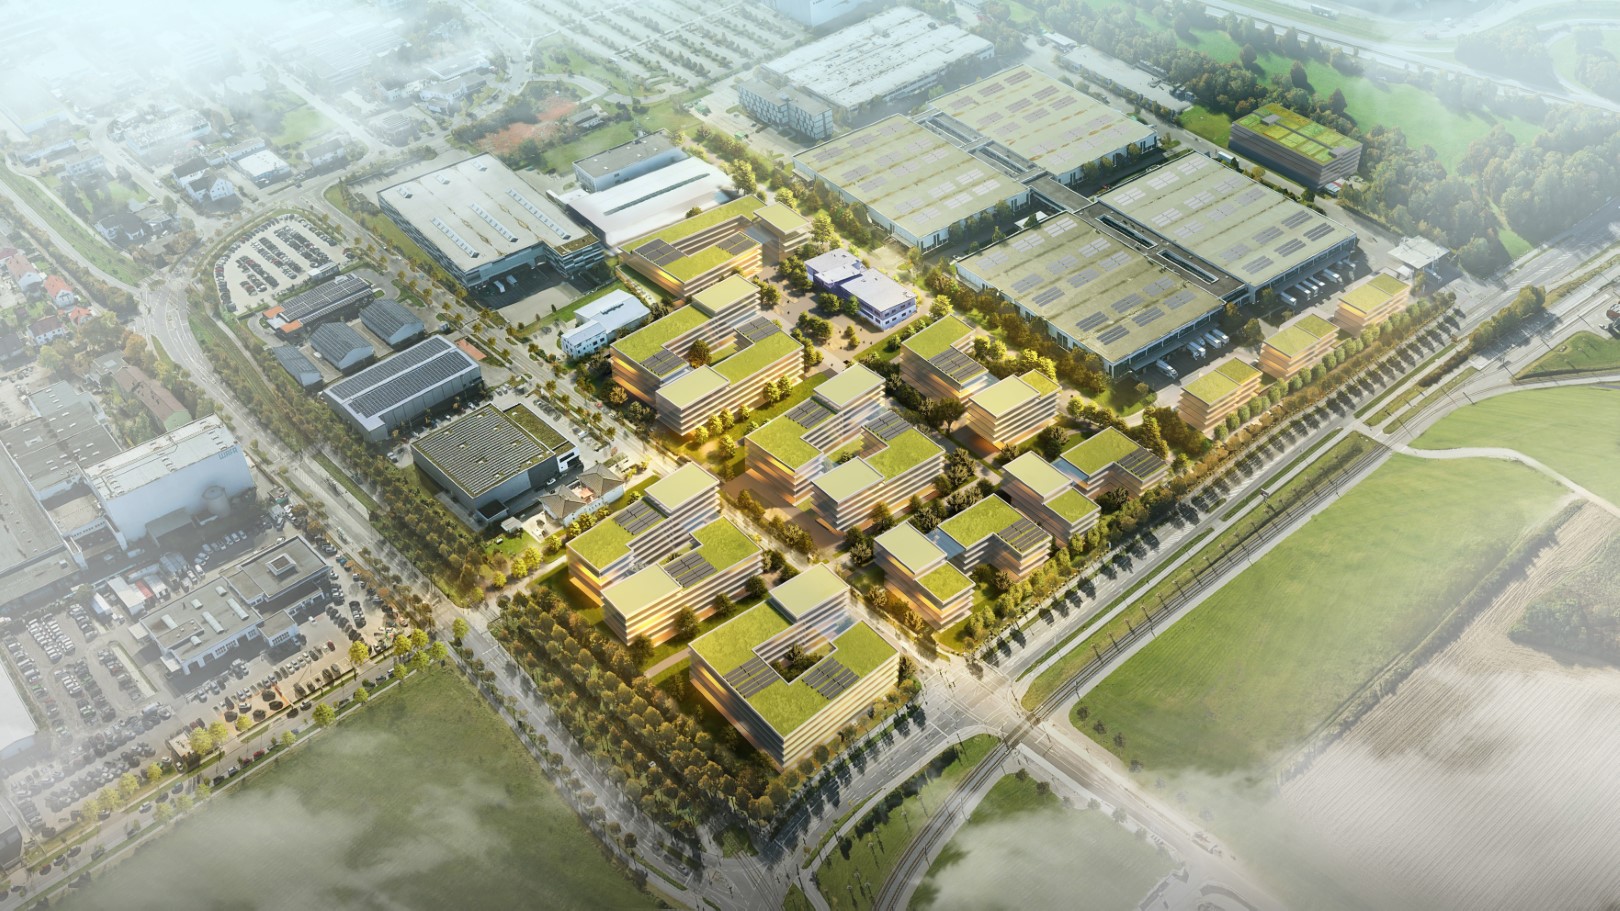 Zukunftsvision WALTER Technology Campus Augsburg (erweiterte Bebauung und Solarflächen)